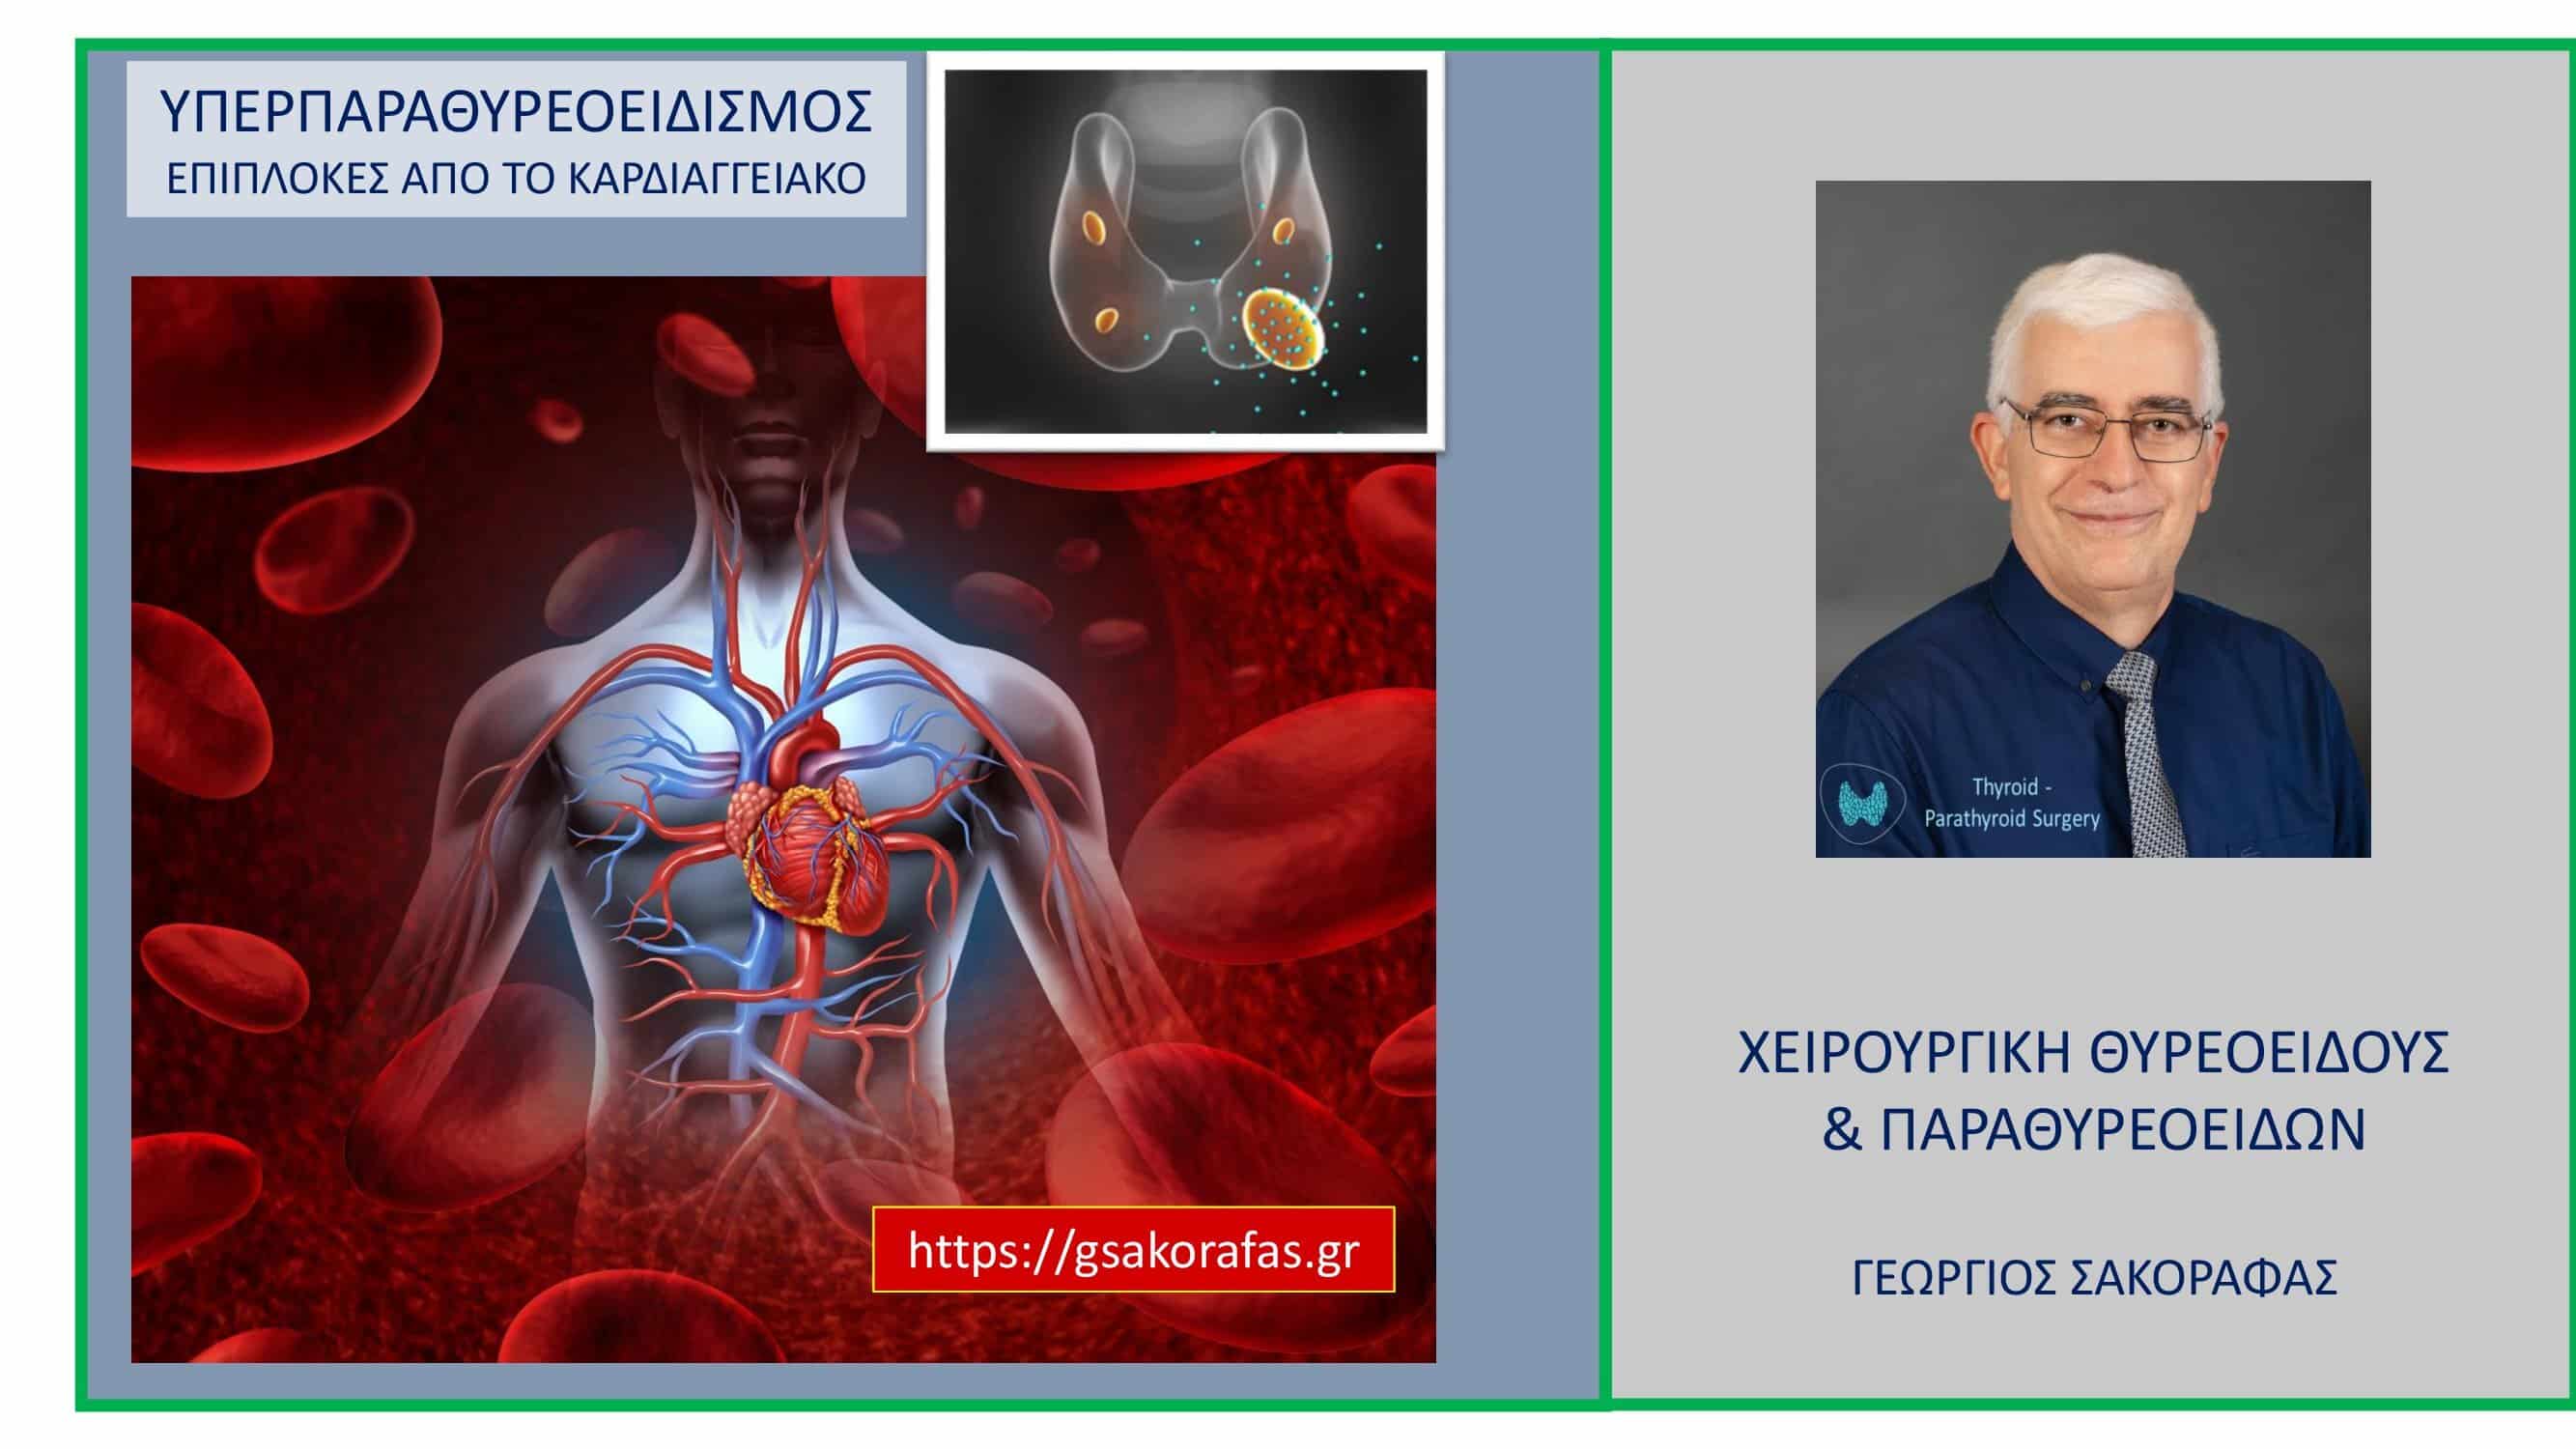 Υπερπαραθυρεοειδισμός (πρωτοπαθής) και επιπλοκές από την καρδιά και τα αγγεία (καρδιαγγειακό σύστημα)